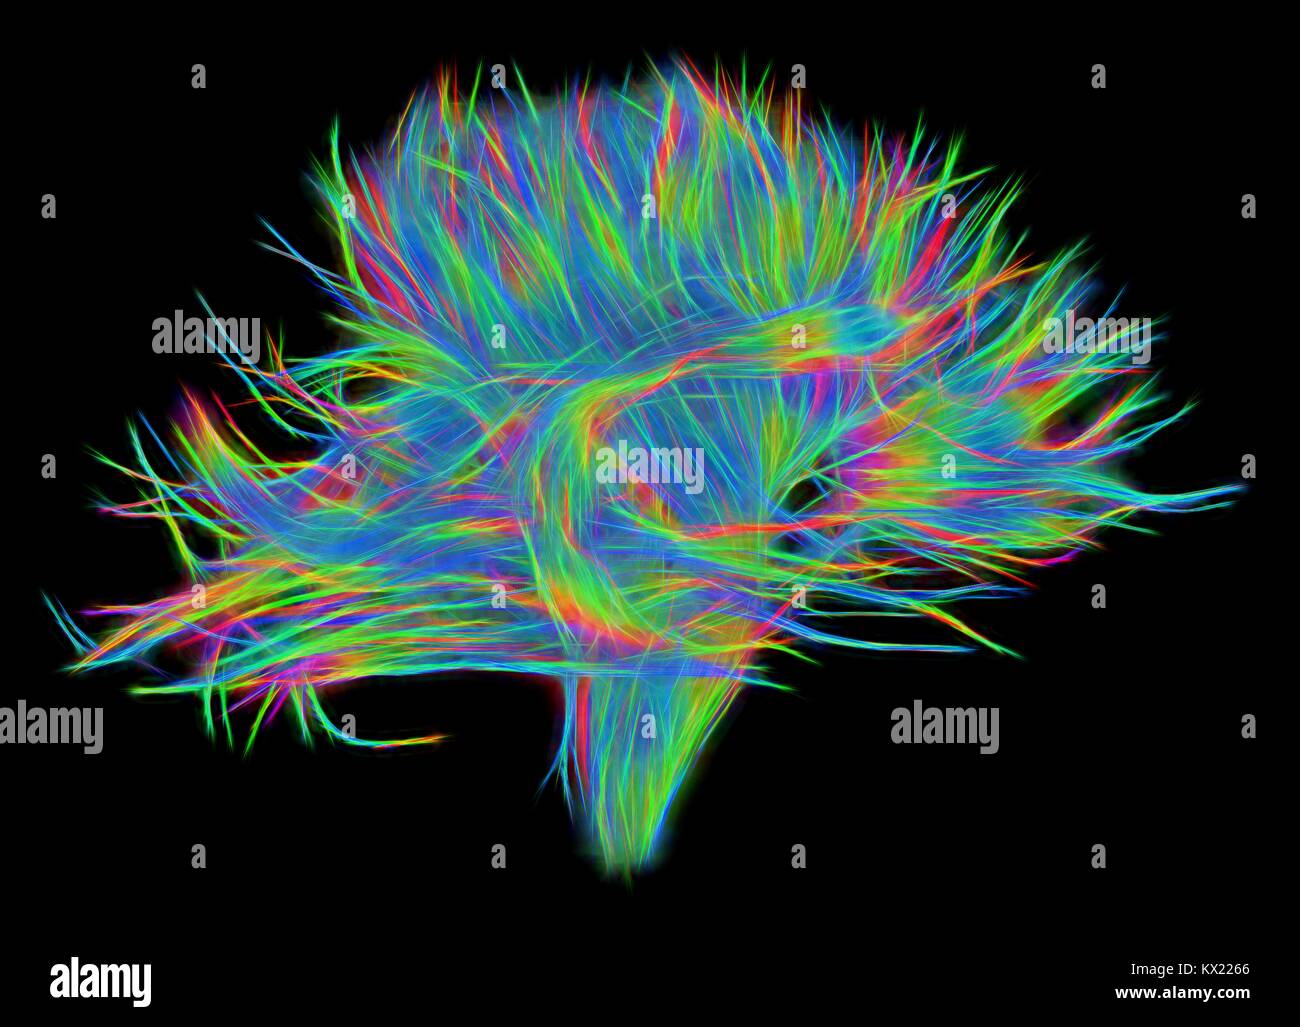 La sostanza bianca fibre. Computer 3D avanzato di diffusione di imaging spettrale (DSI) scansione dei fasci di sostanza bianca in fibre di nervo nel cervello. Le fibre di trasmettere segnali nervosi tra le regioni del cervello e tra il cervello e il midollo spinale. Spettro di diffusione di imaging (DSI) è una variante della formazione di immagini a risonanza magnetica (MRI) in cui un campo magnetico mappe l'acqua contenuta nel neurone le fibre e quindi la loro mappatura incrociando i modelli. Una simile tecnica denominata imaging del tensore di diffusione (DTI) è utilizzato anche per esplorare i dati neurali della materia bianca fibre nel cervello. Entrambi i metodi consentono la mappatura di loro Foto Stock